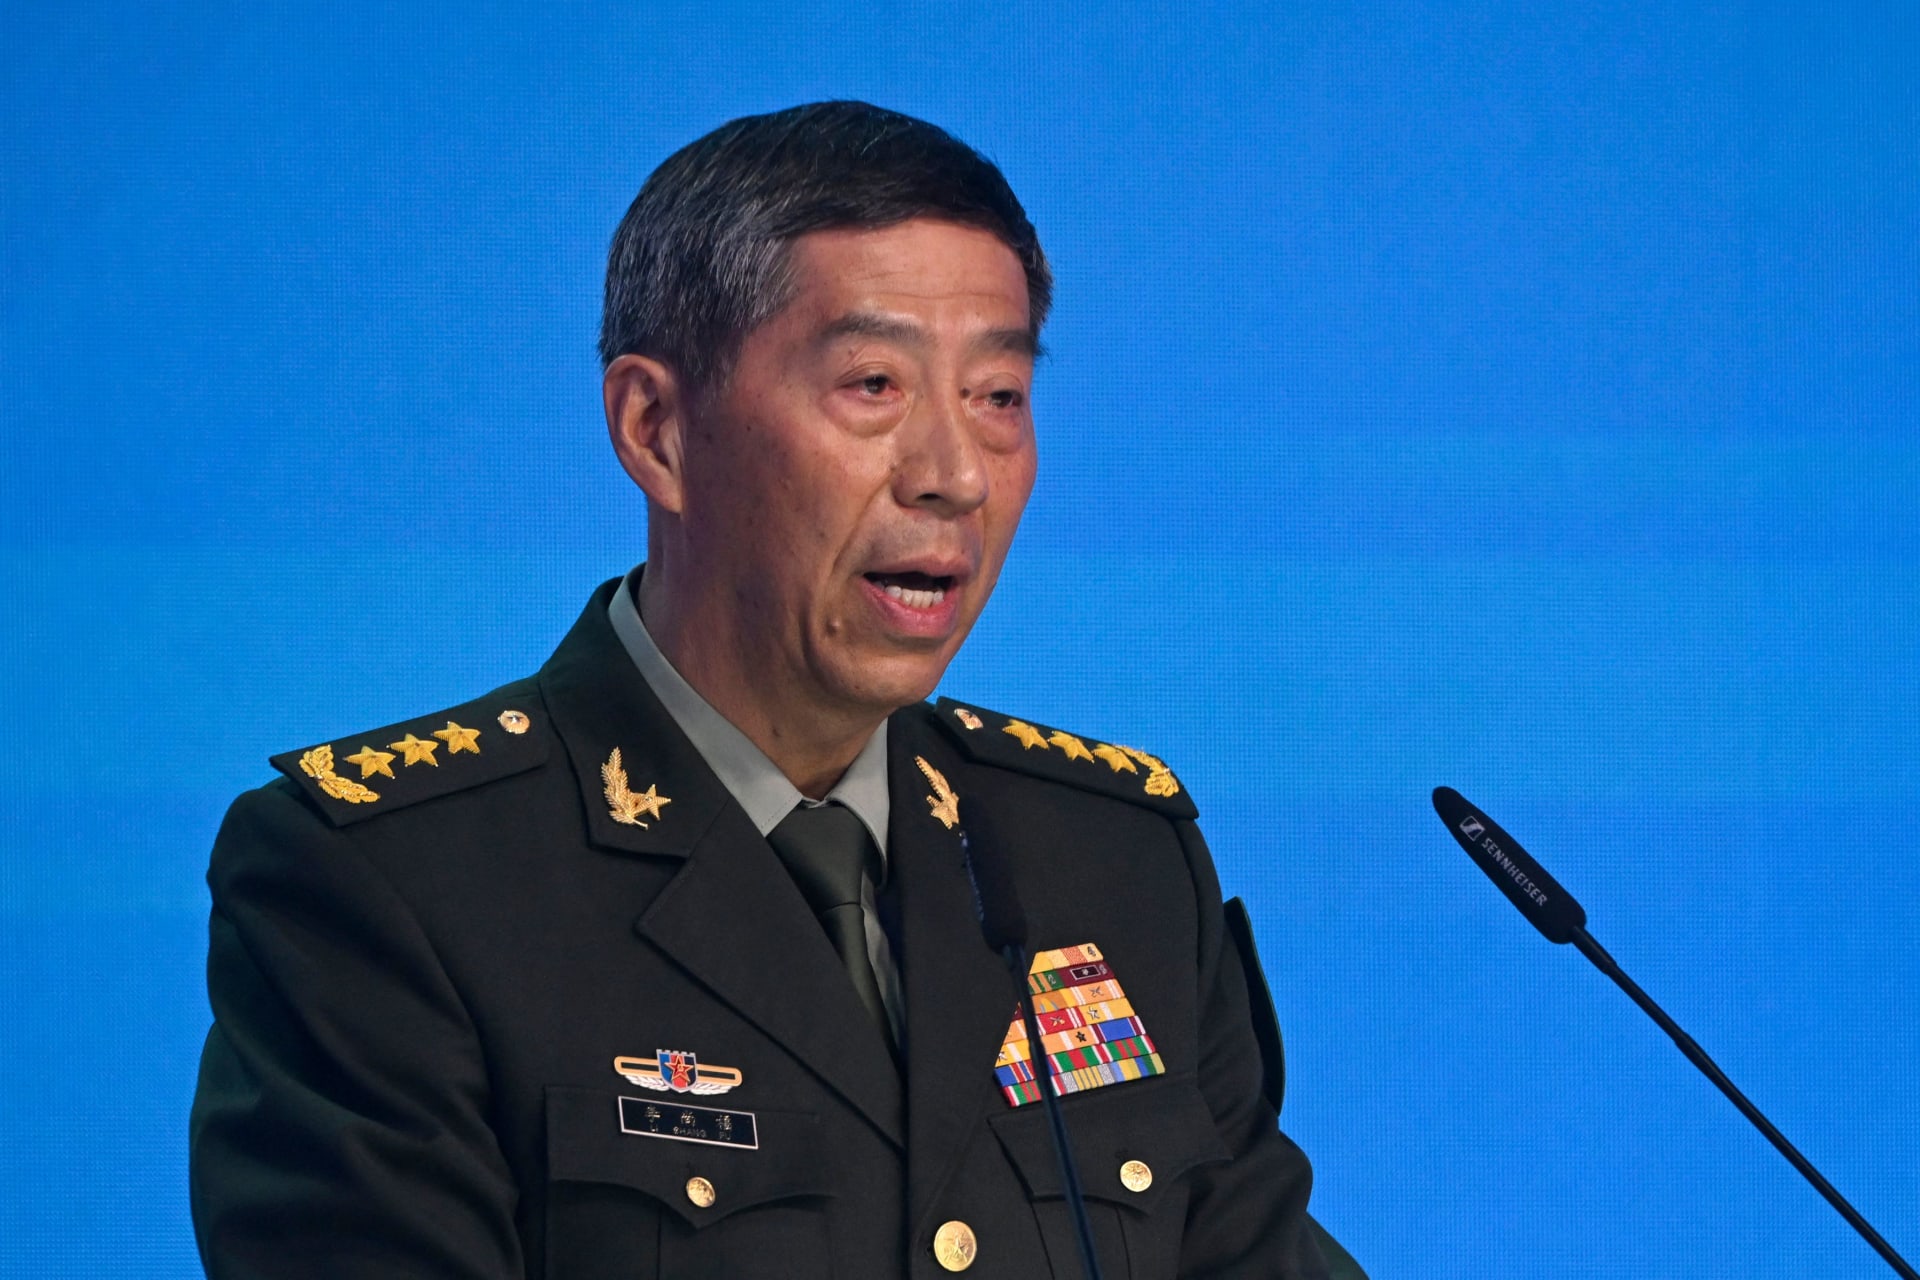 بعد الإطاحة بوزير الخارجية.. الصين تعلن إقالة وزير دفاعها من جميع مناصبه